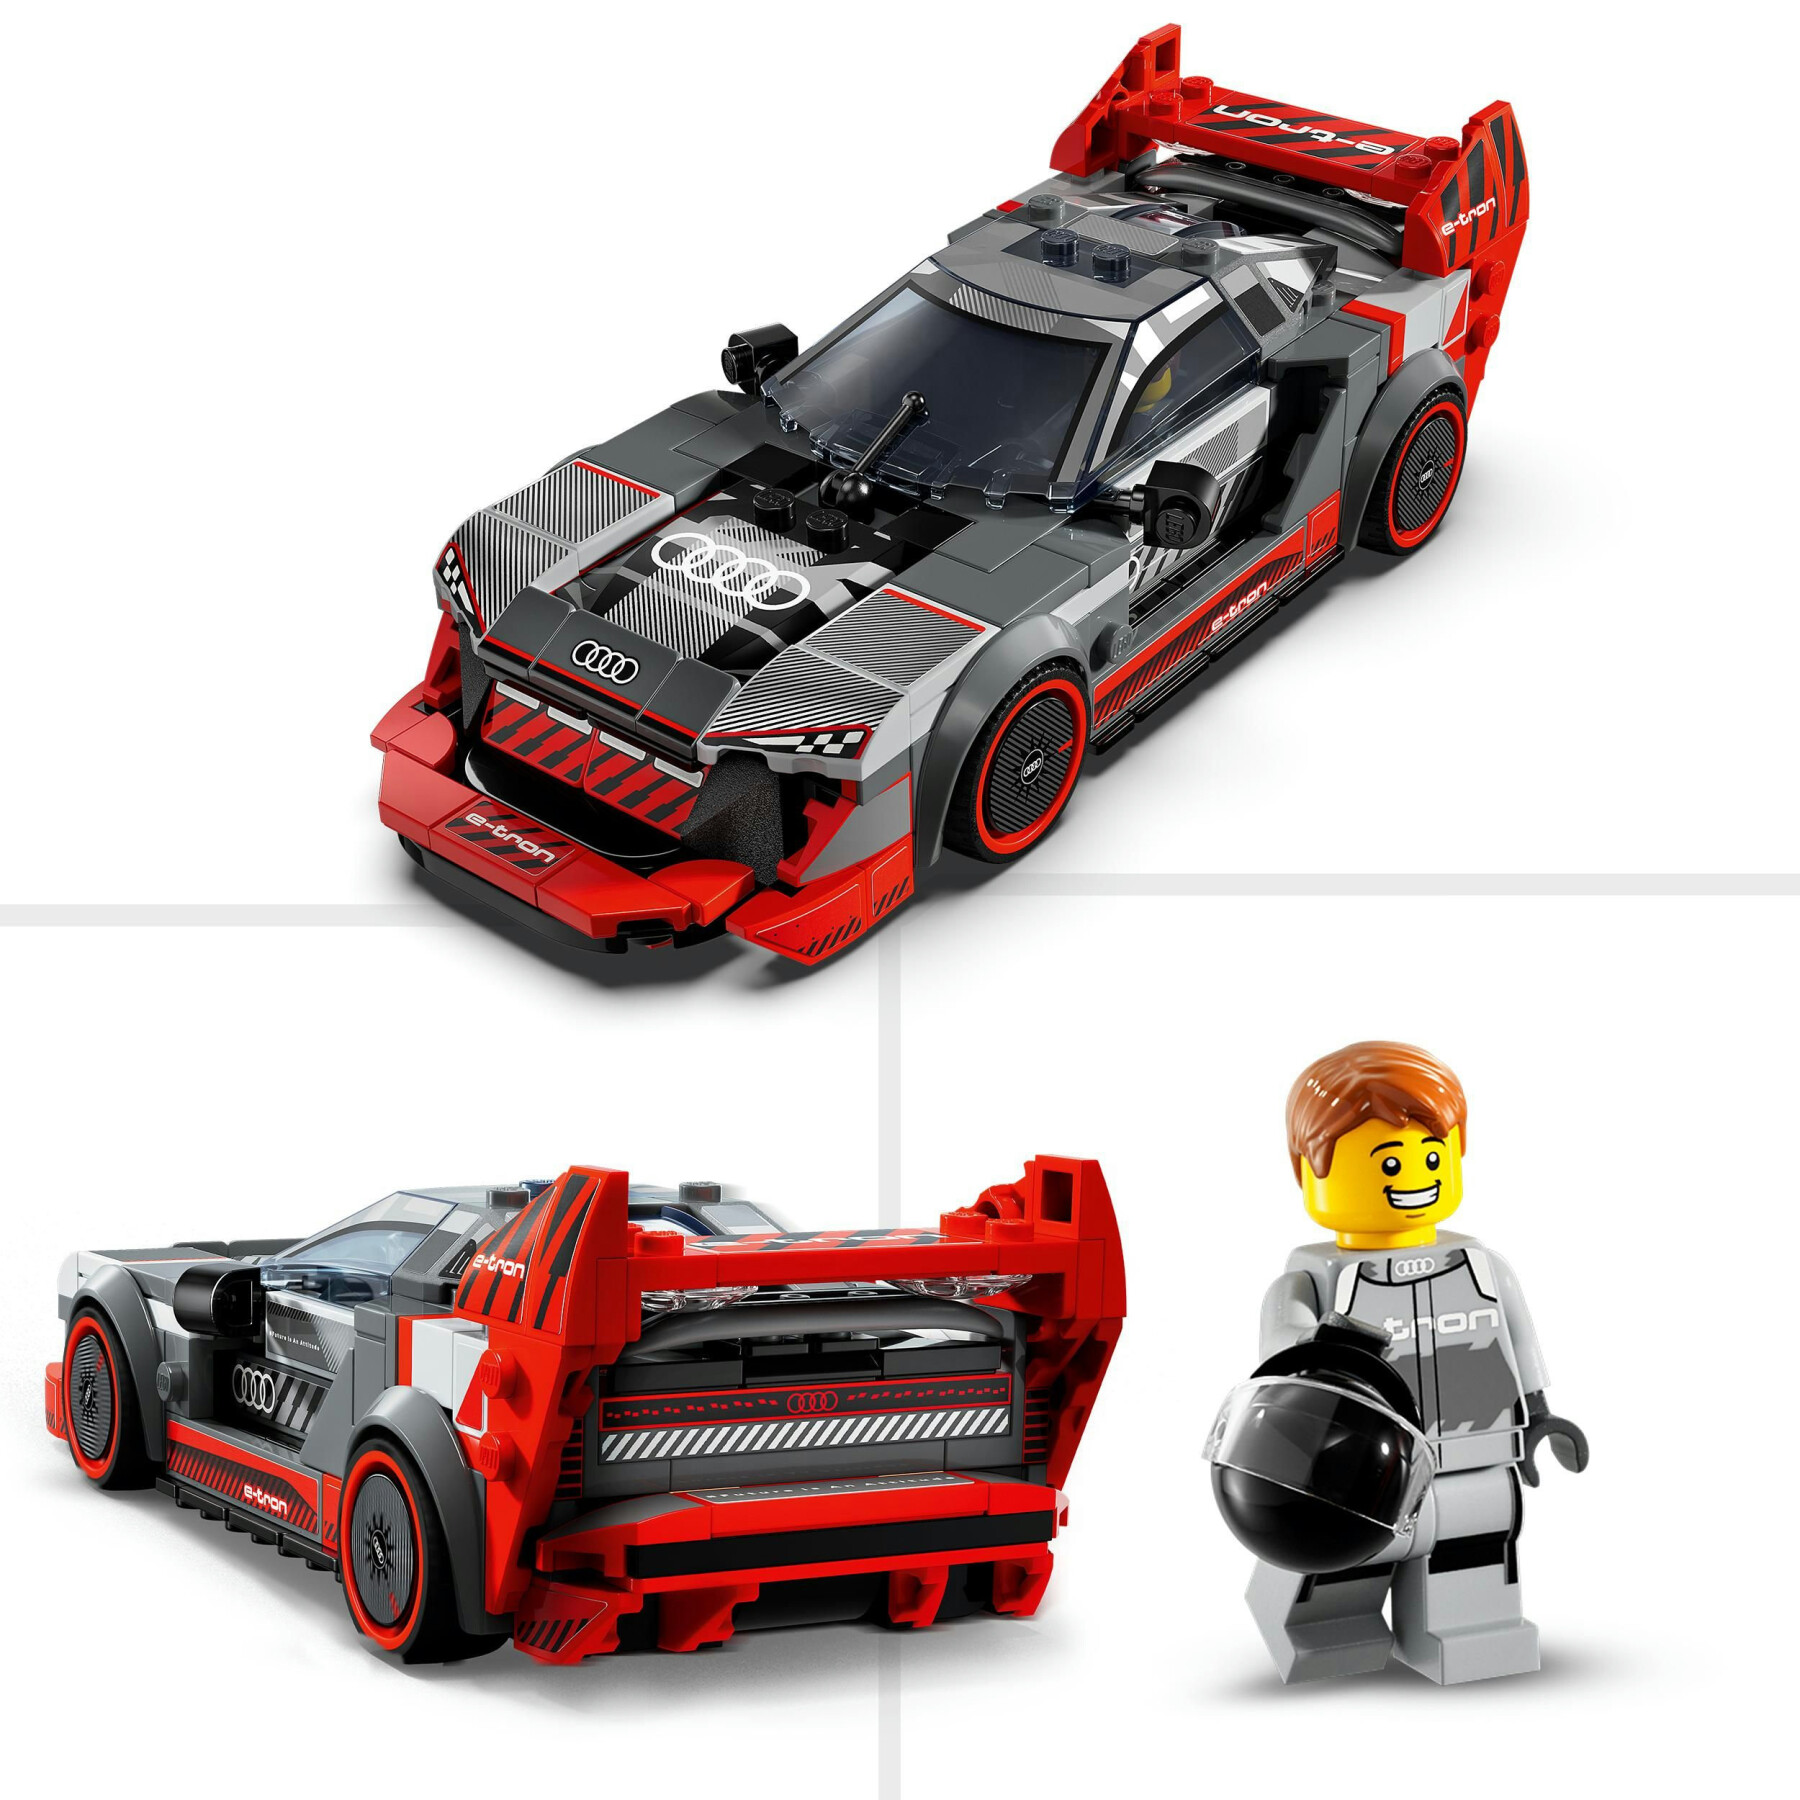 Lego speed champions 76921 auto da corsa audi s1 e-tron quattro, modellino da costruire di macchina giocattolo per bambini 9+ - LEGO SPEED CHAMPIONS